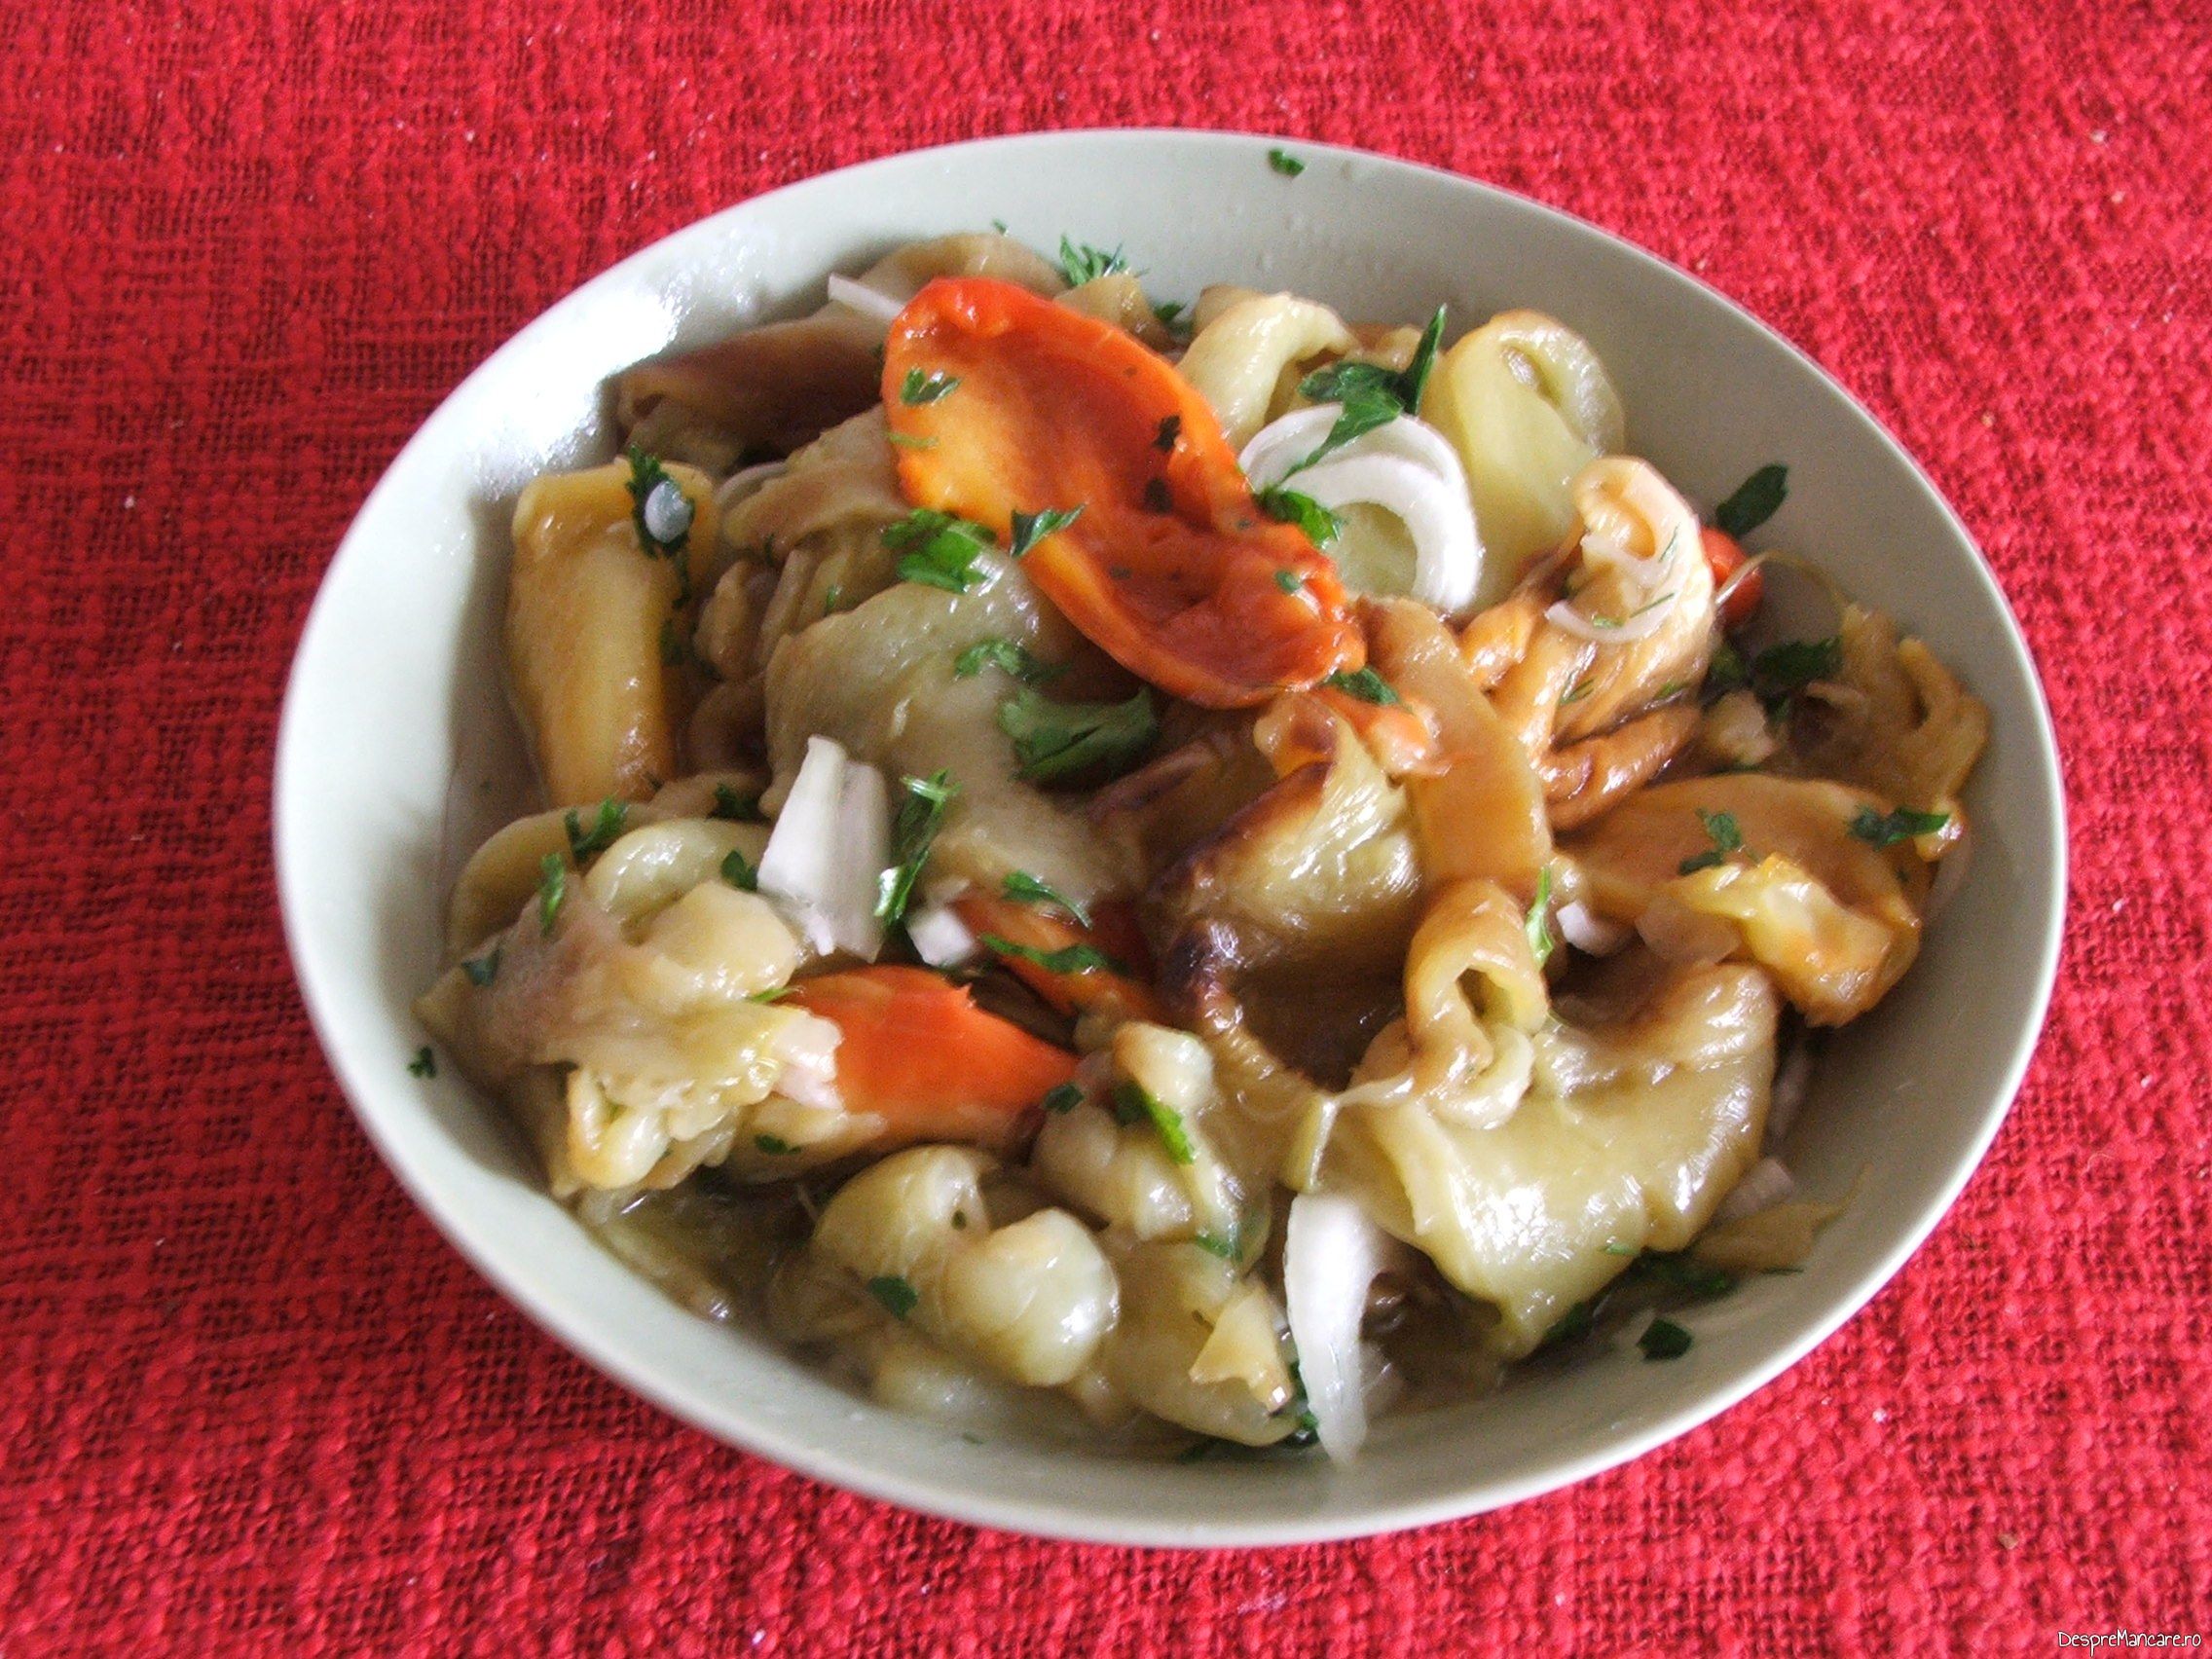 Salata de ardei copti, cu ceapa servita la friptura de pui/ curcan, cu garnitura de chiftelute din legume, la cuptor.